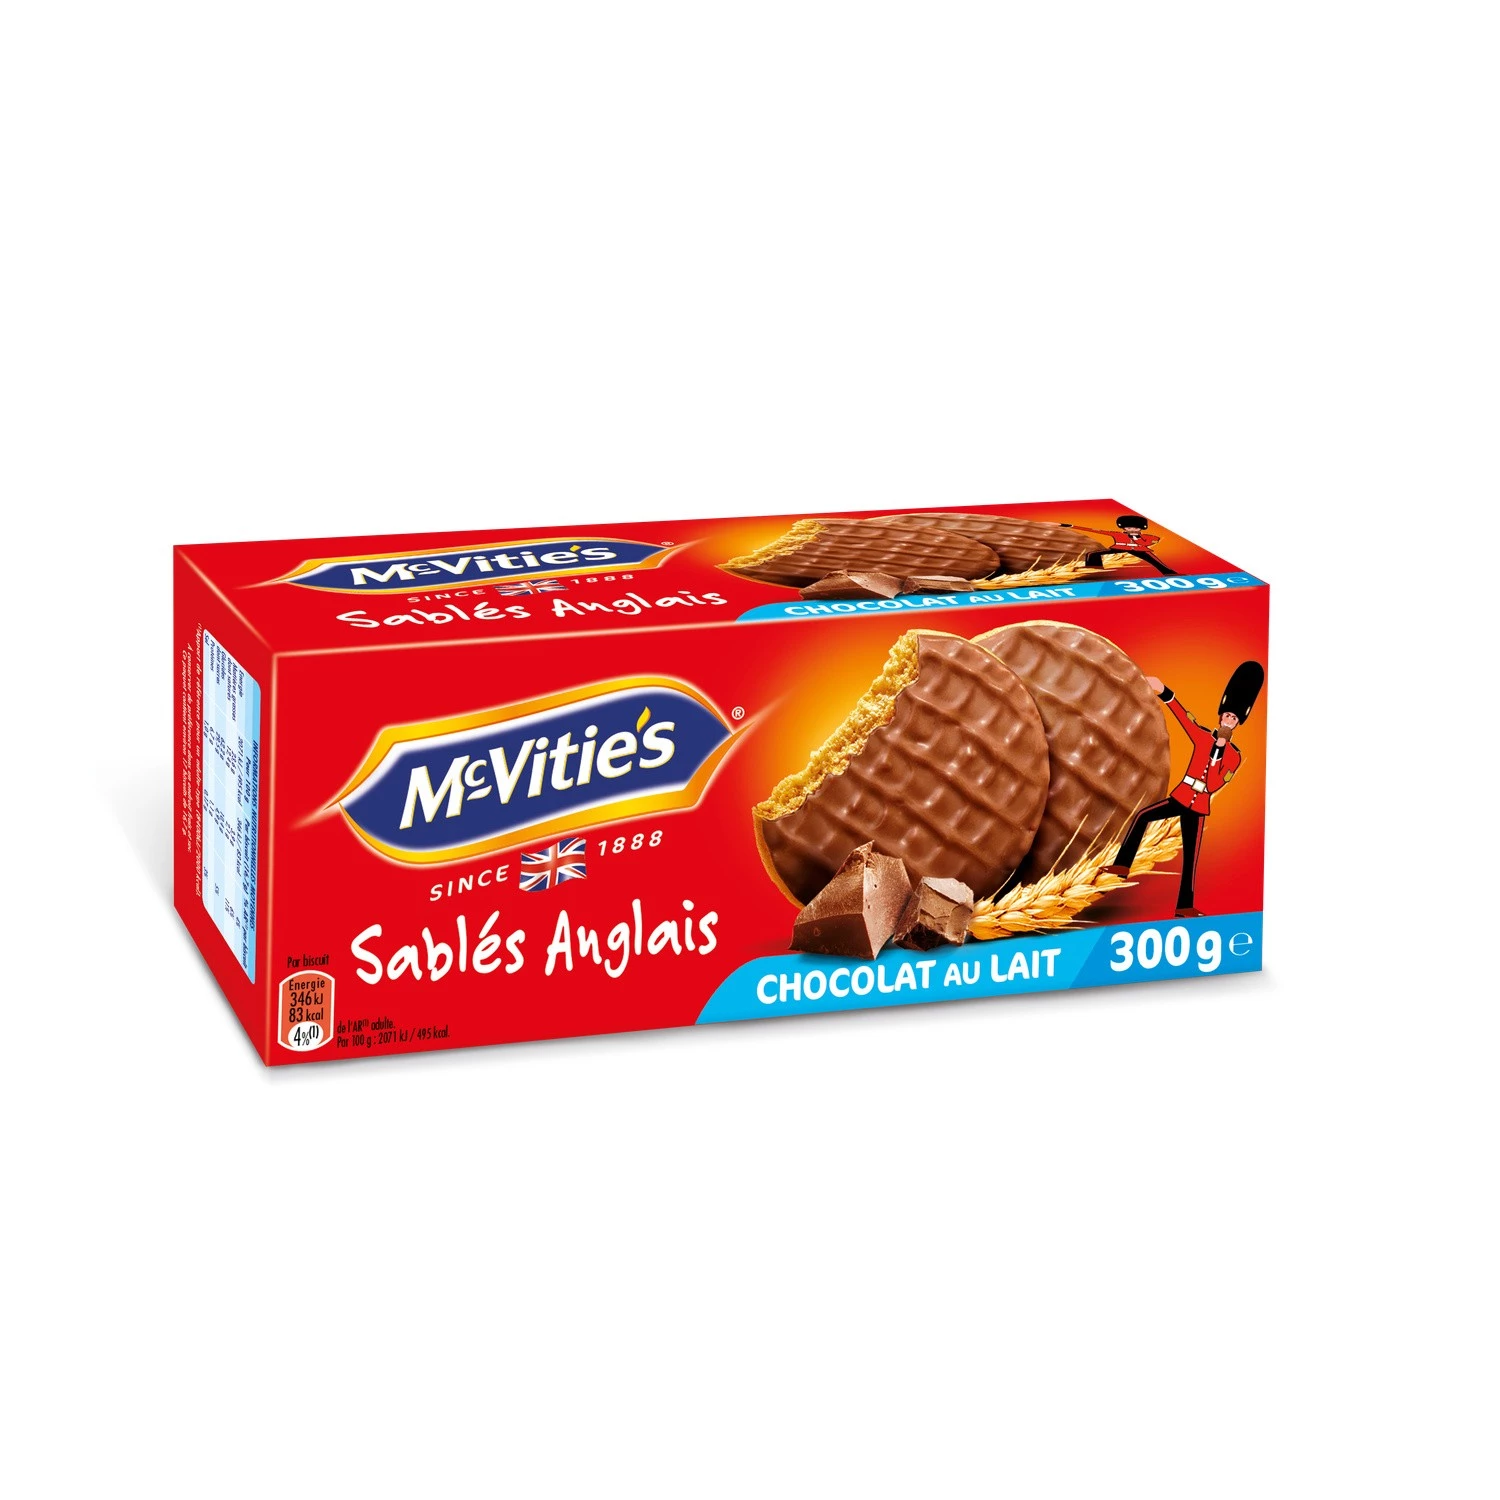 Песочное печенье с молочным шоколадом 300г - MC VITIE'S